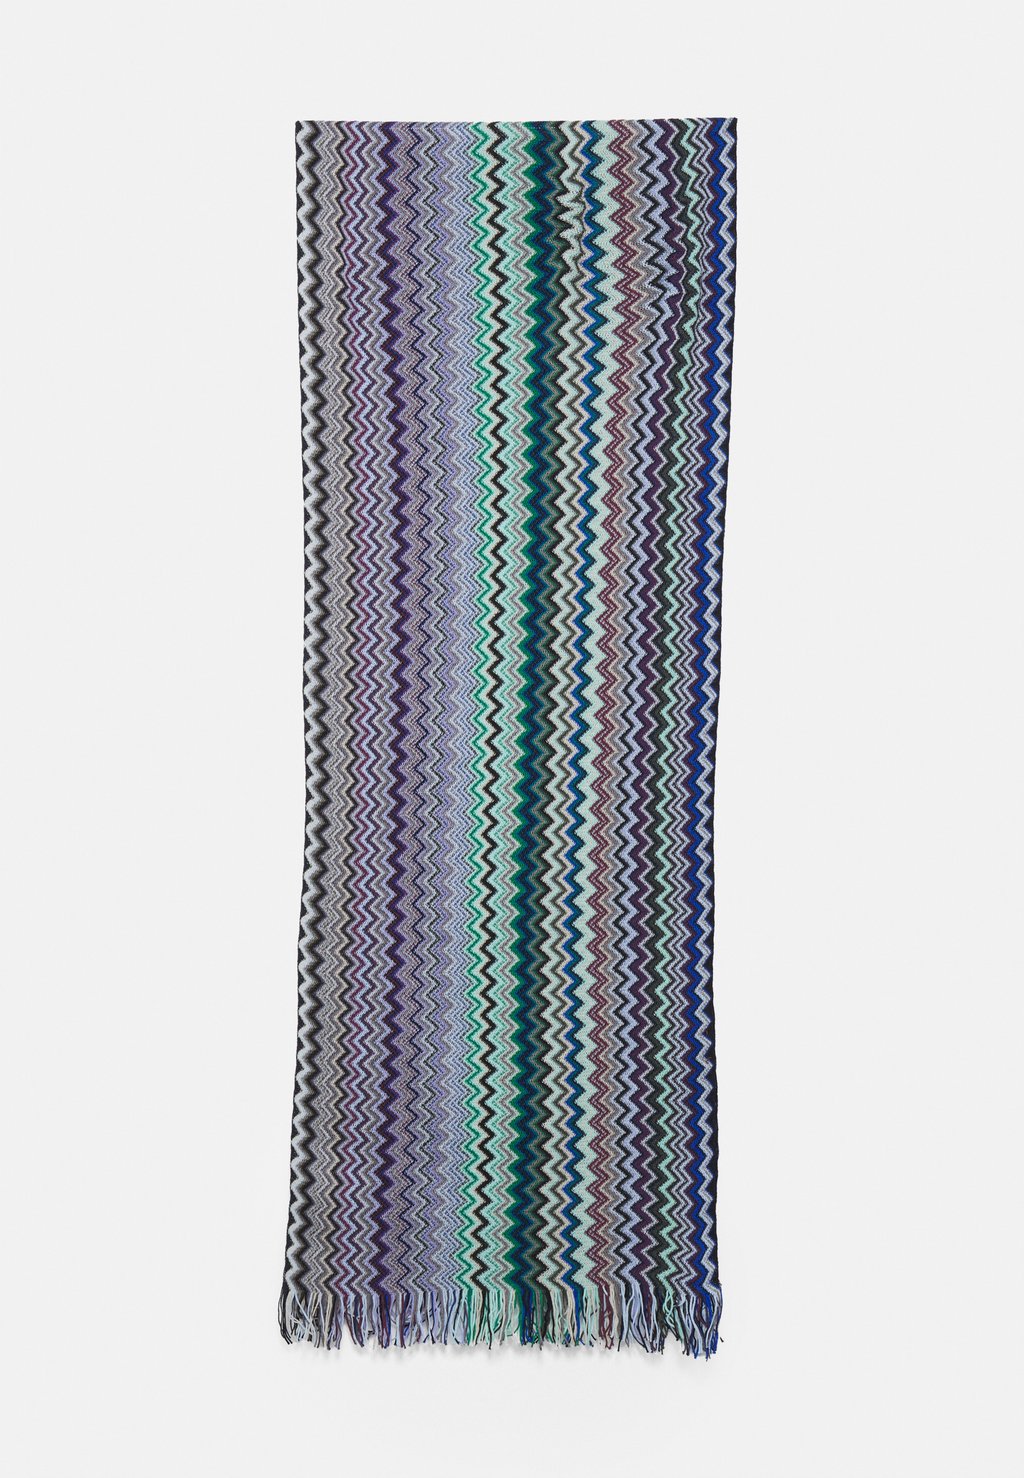 галстук tie unisex missoni цвет red blue Шарф SCARF UNISEX Missoni, цвет blue/green